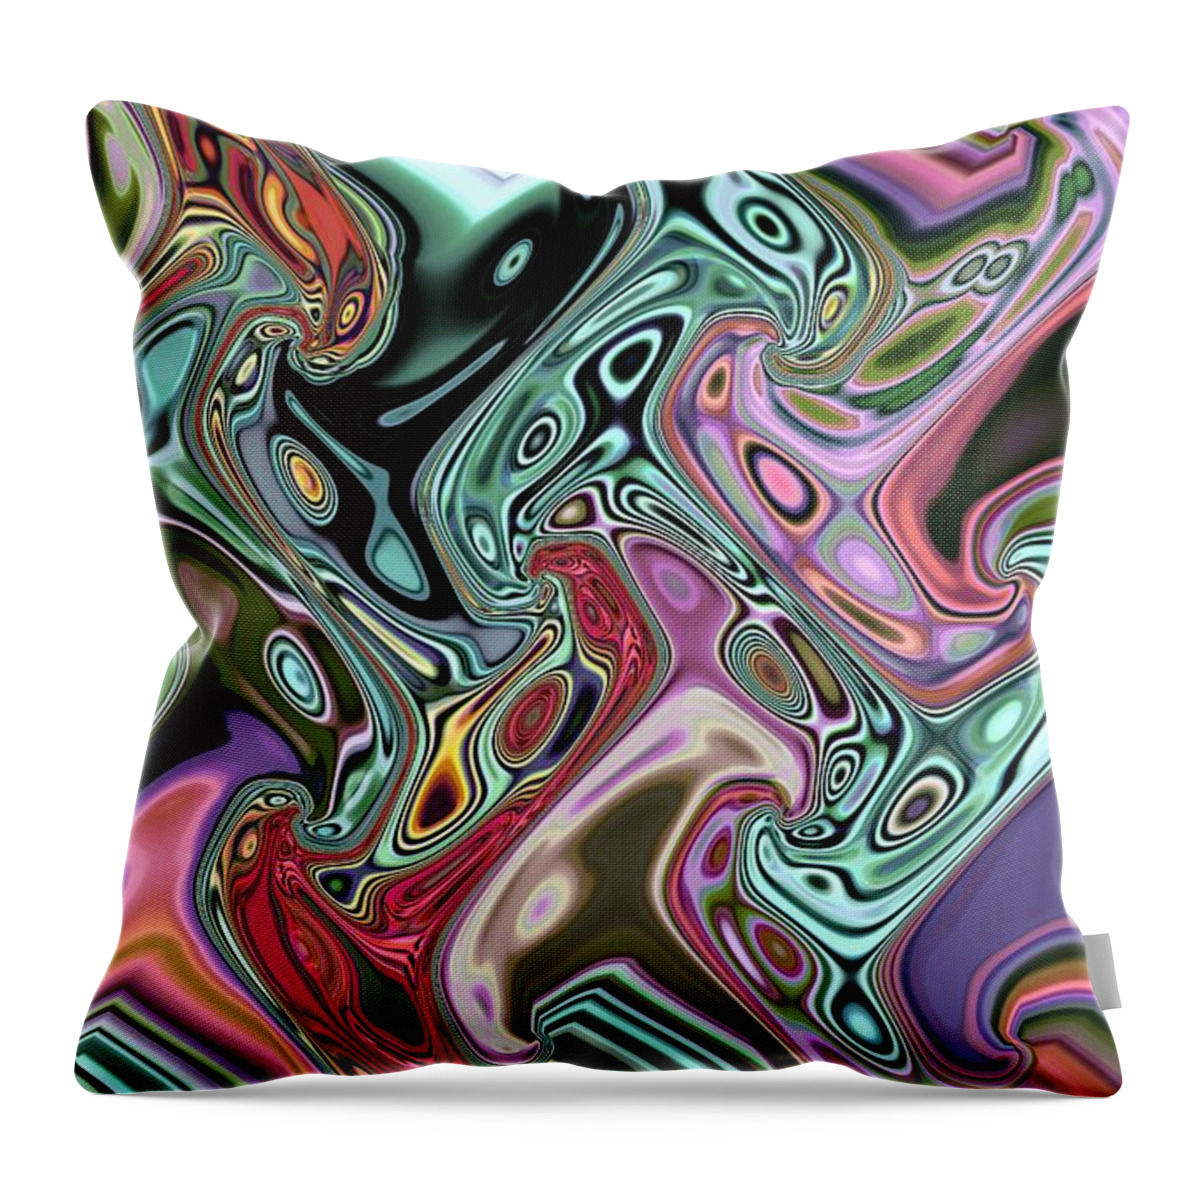 Digital Decor Throw Pillow featuring the digital art Liquid Nitrogen by Andrew Hewett